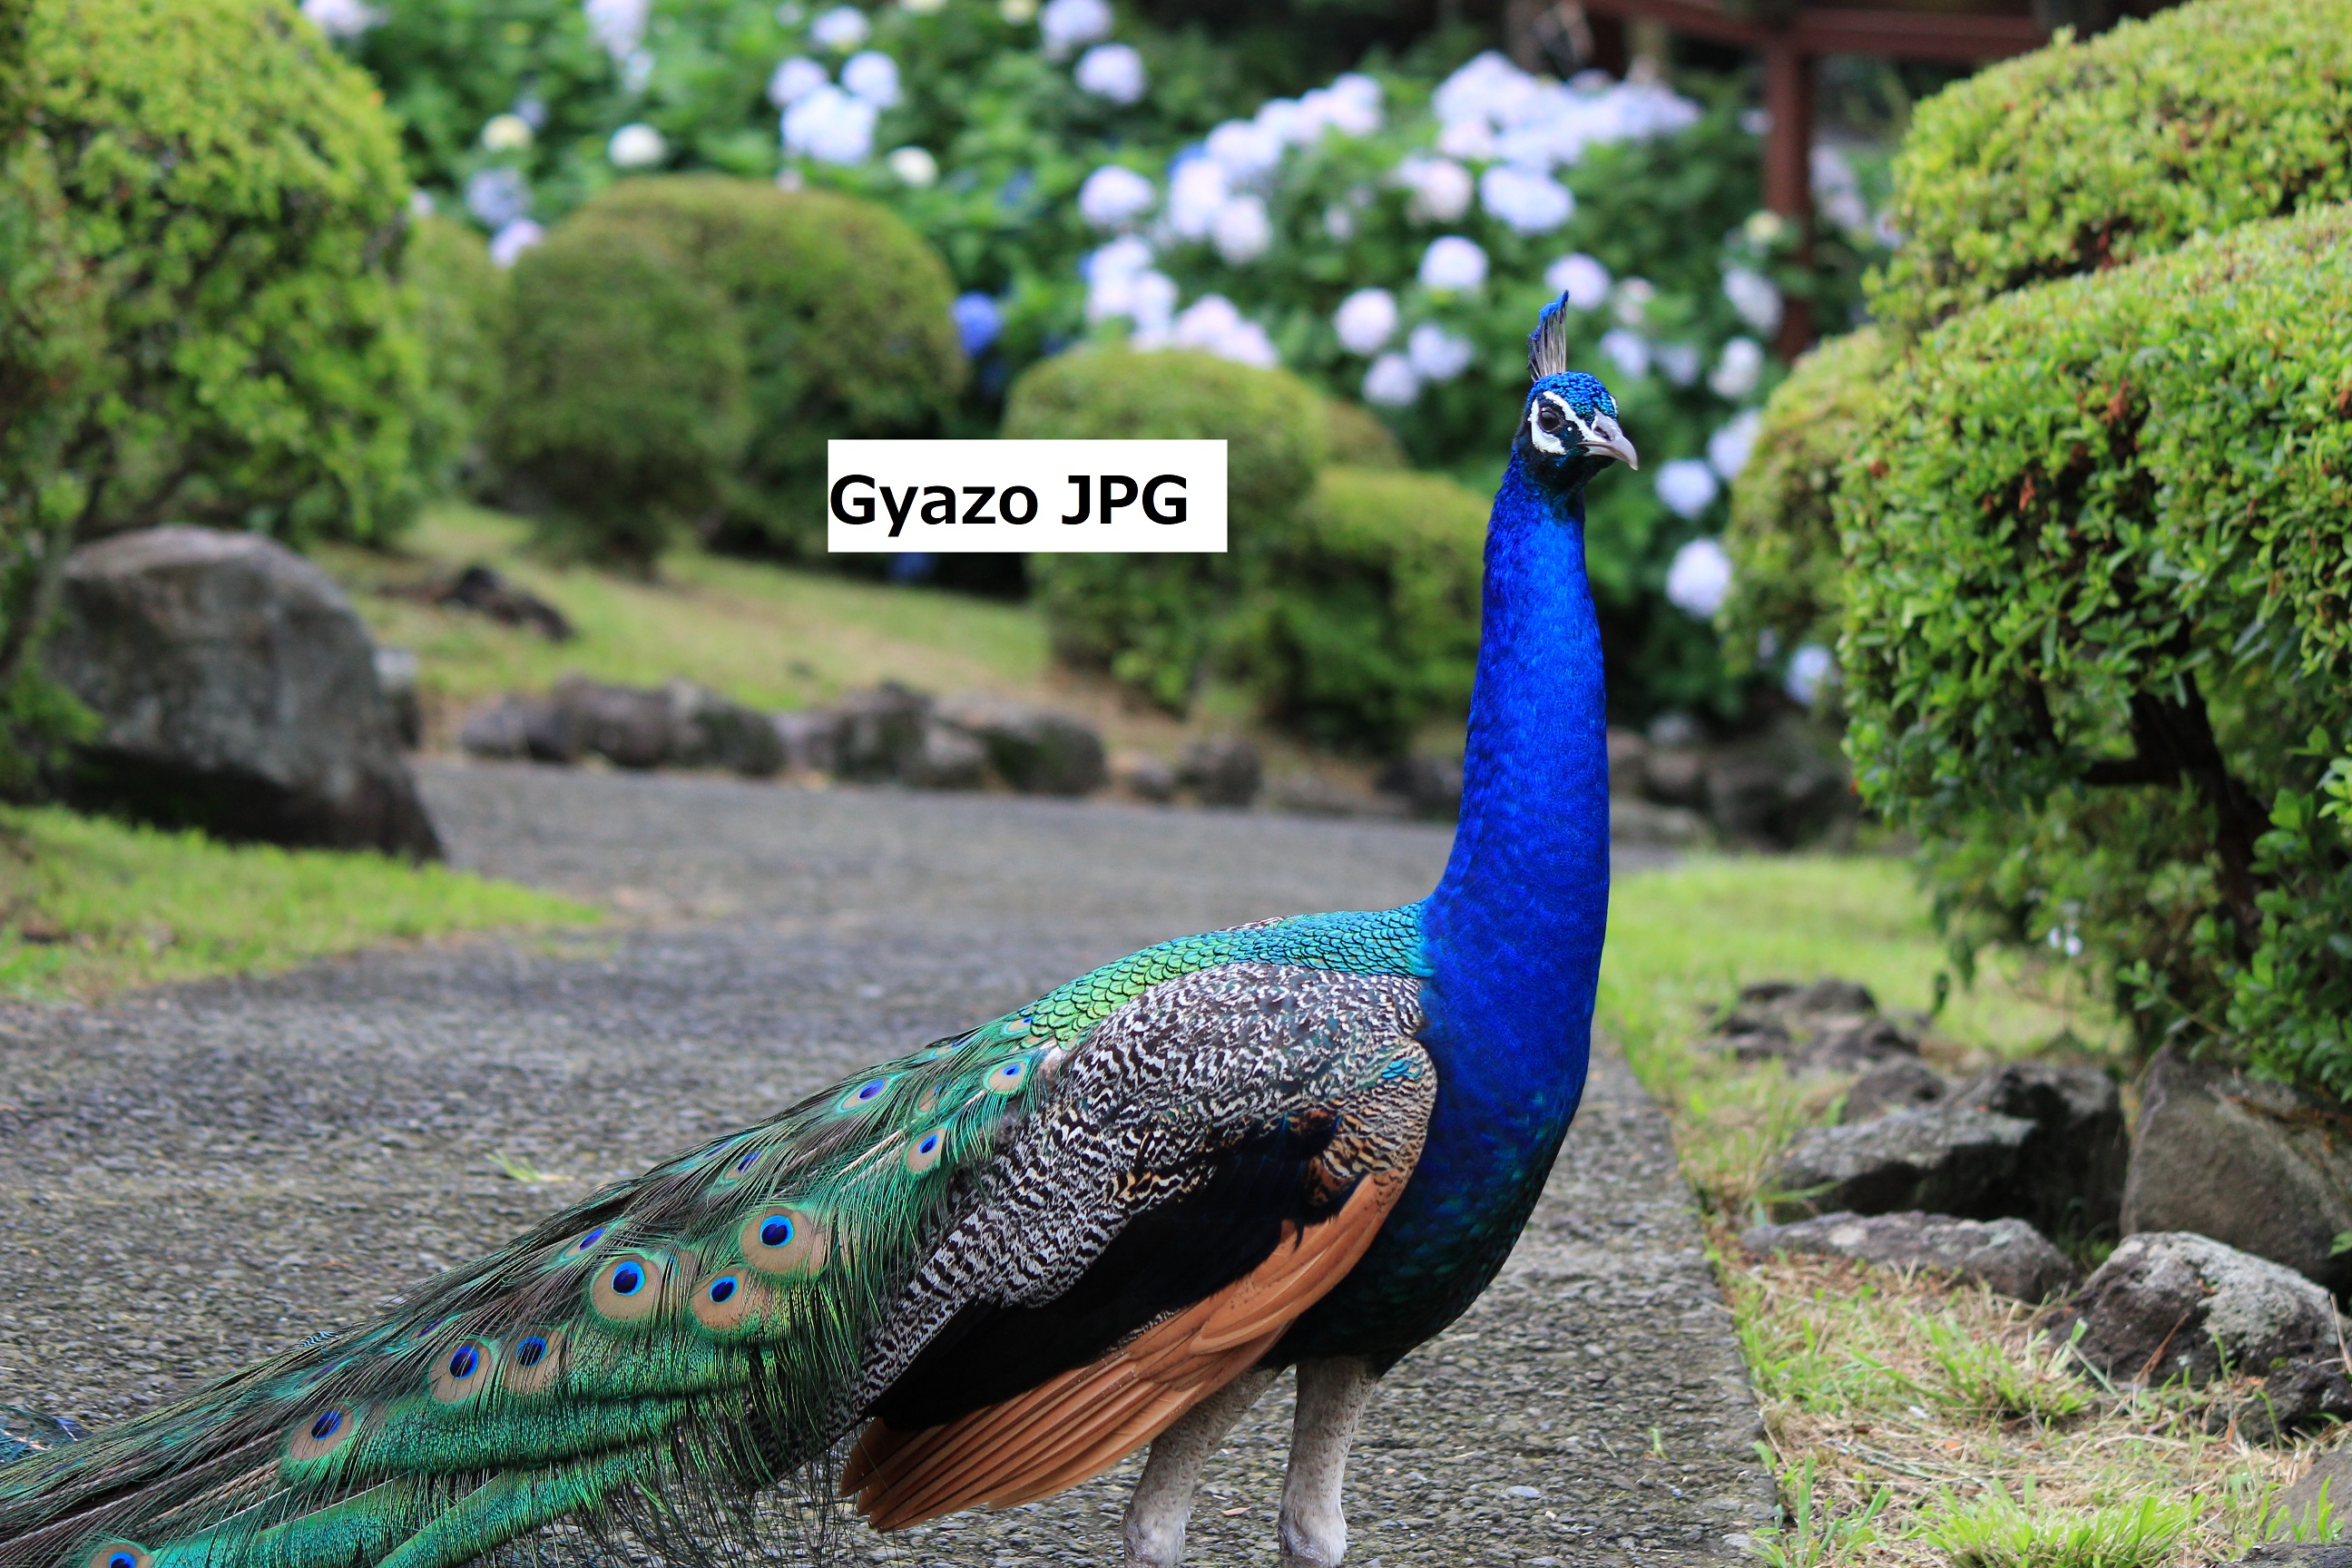 Image from Gyazo